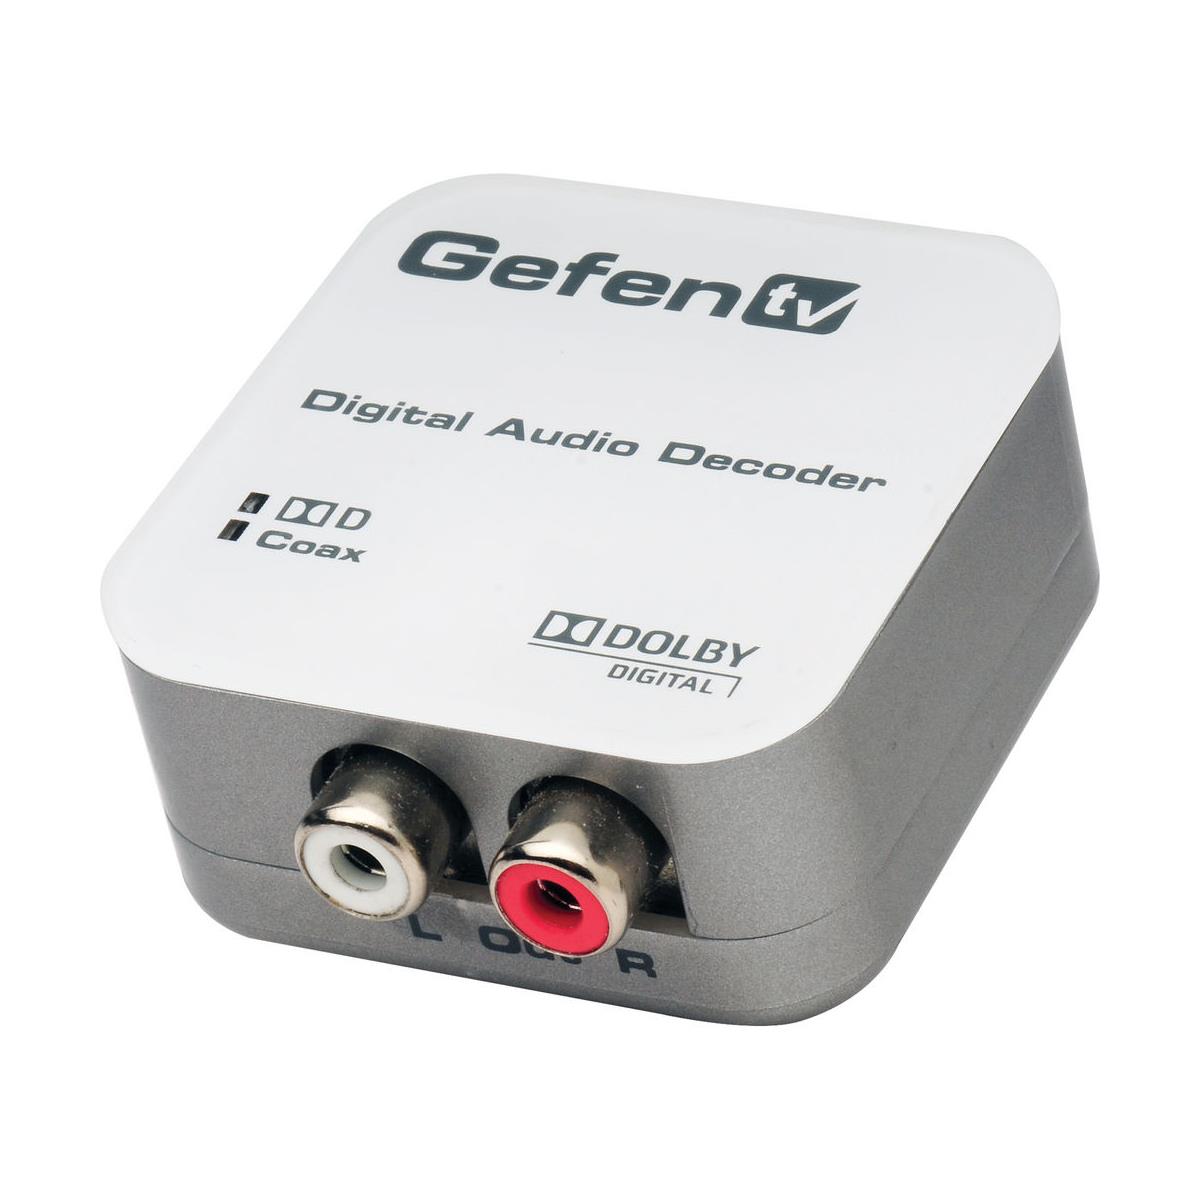 Image of Gefen Digital Audio Decoder